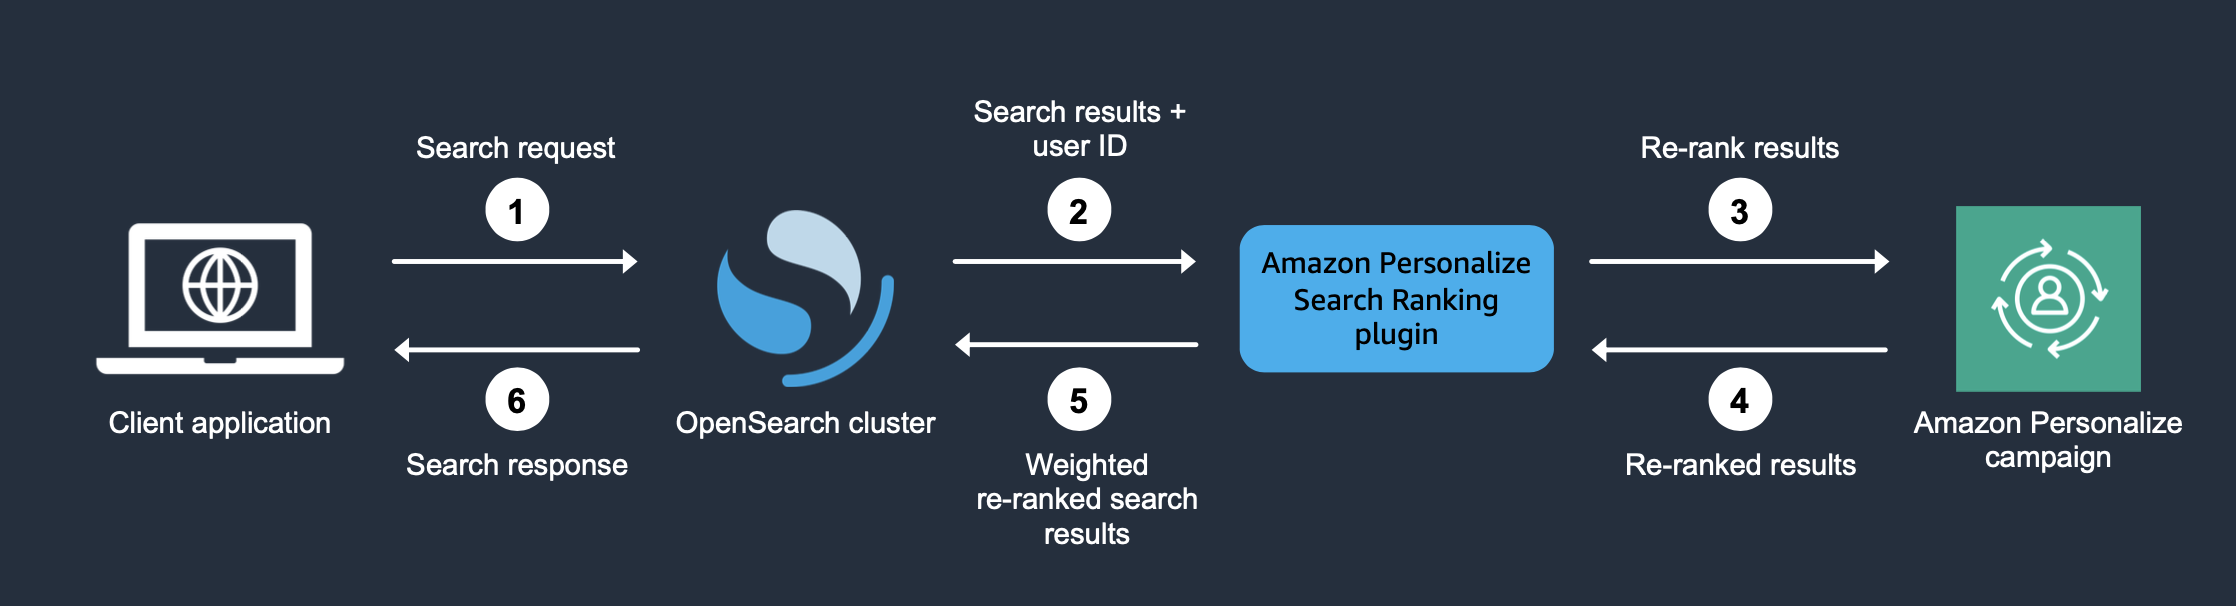 Descreve como o plug-in funciona quando você o usa para personalizar OpenSearch os resultados.